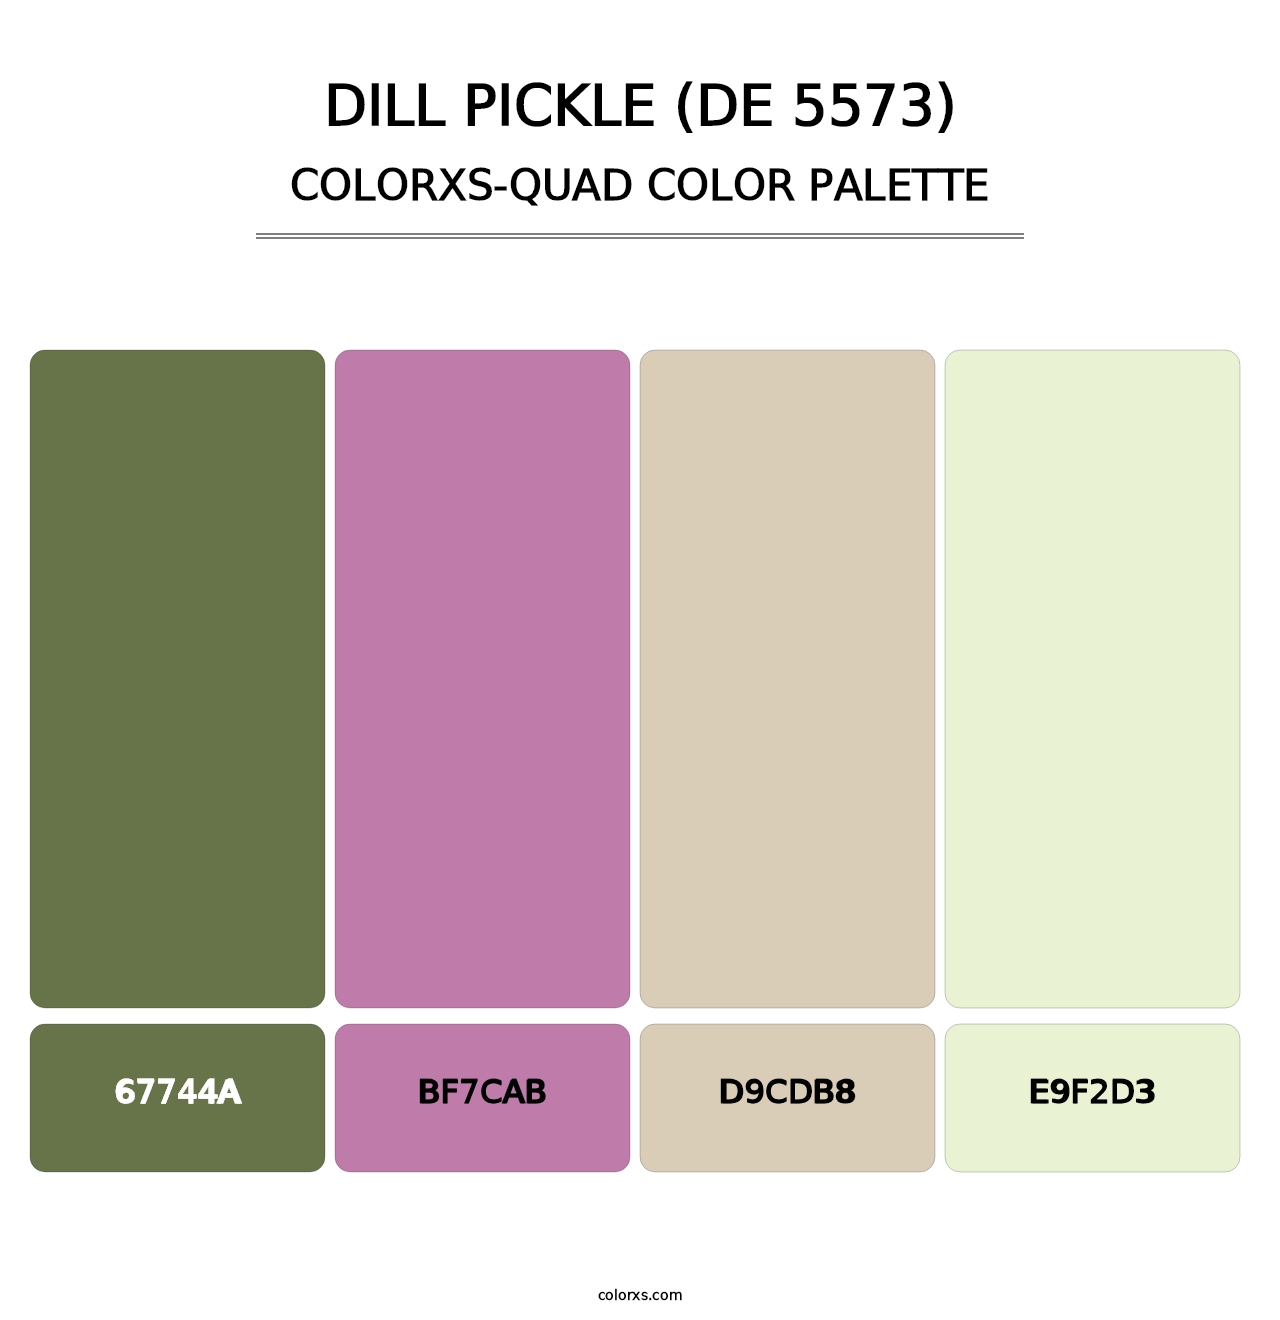 Dill Pickle (DE 5573) - Colorxs Quad Palette